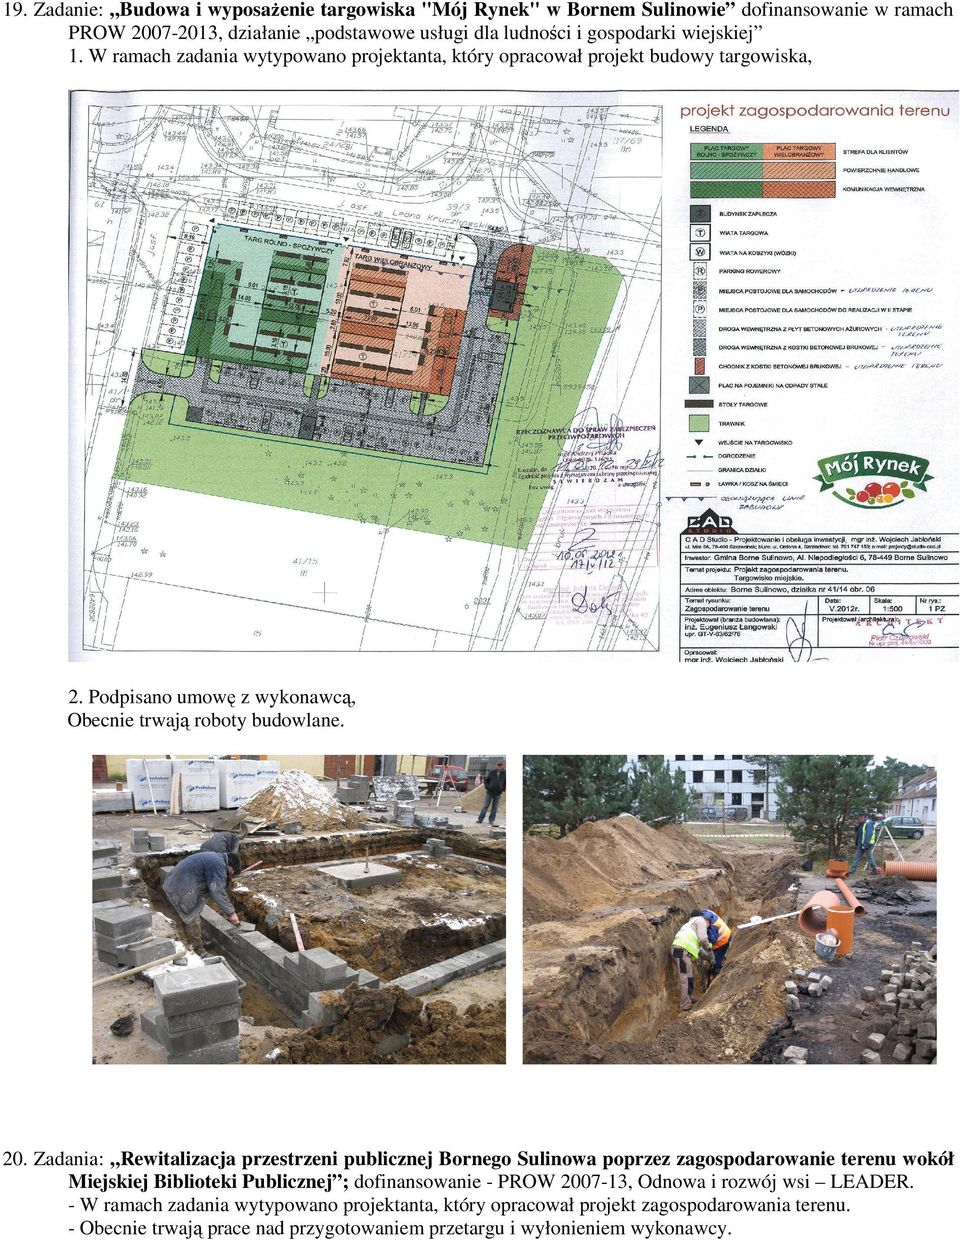 Zadania: Rewitalizacja przestrzeni publicznej Bornego Sulinowa poprzez zagospodarowanie terenu wokół Miejskiej Biblioteki Publicznej ; dofinansowanie - PROW 2007-13, Odnowa i